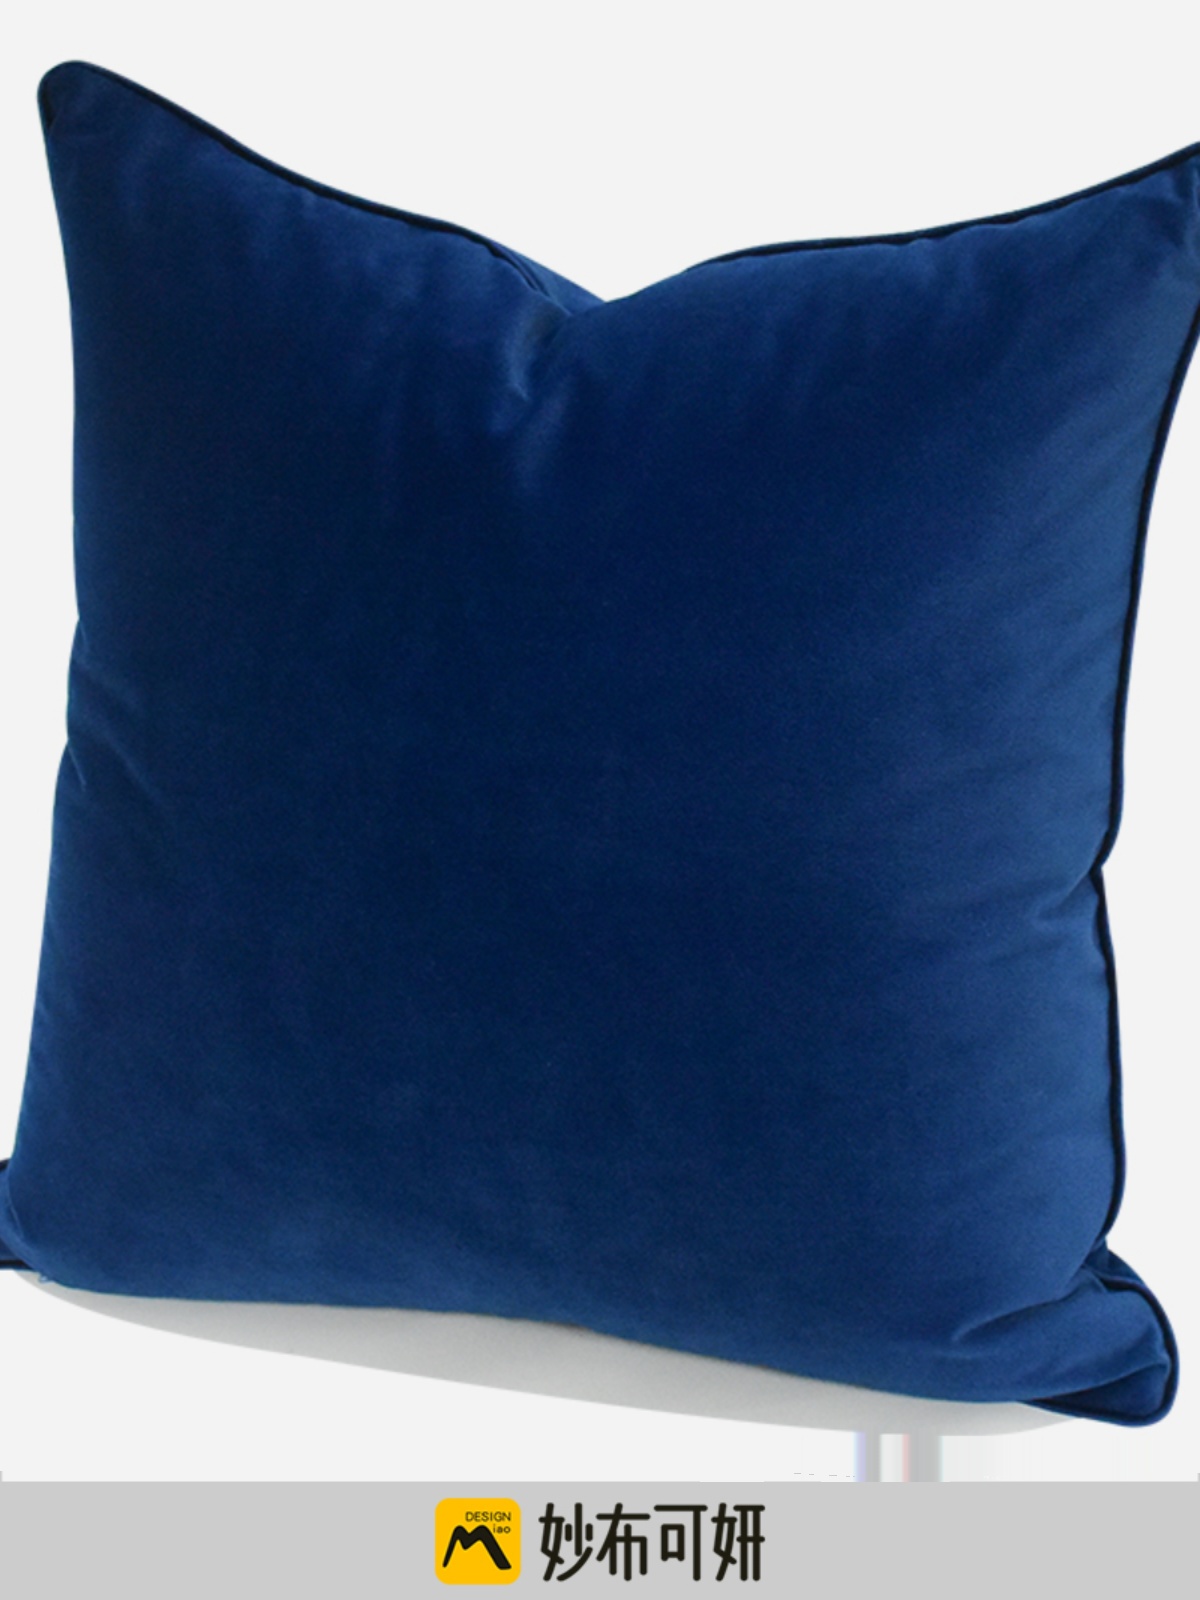 深藍色毛絨抱枕套素面設計雙面滾邊現代風格適用臥室午睡